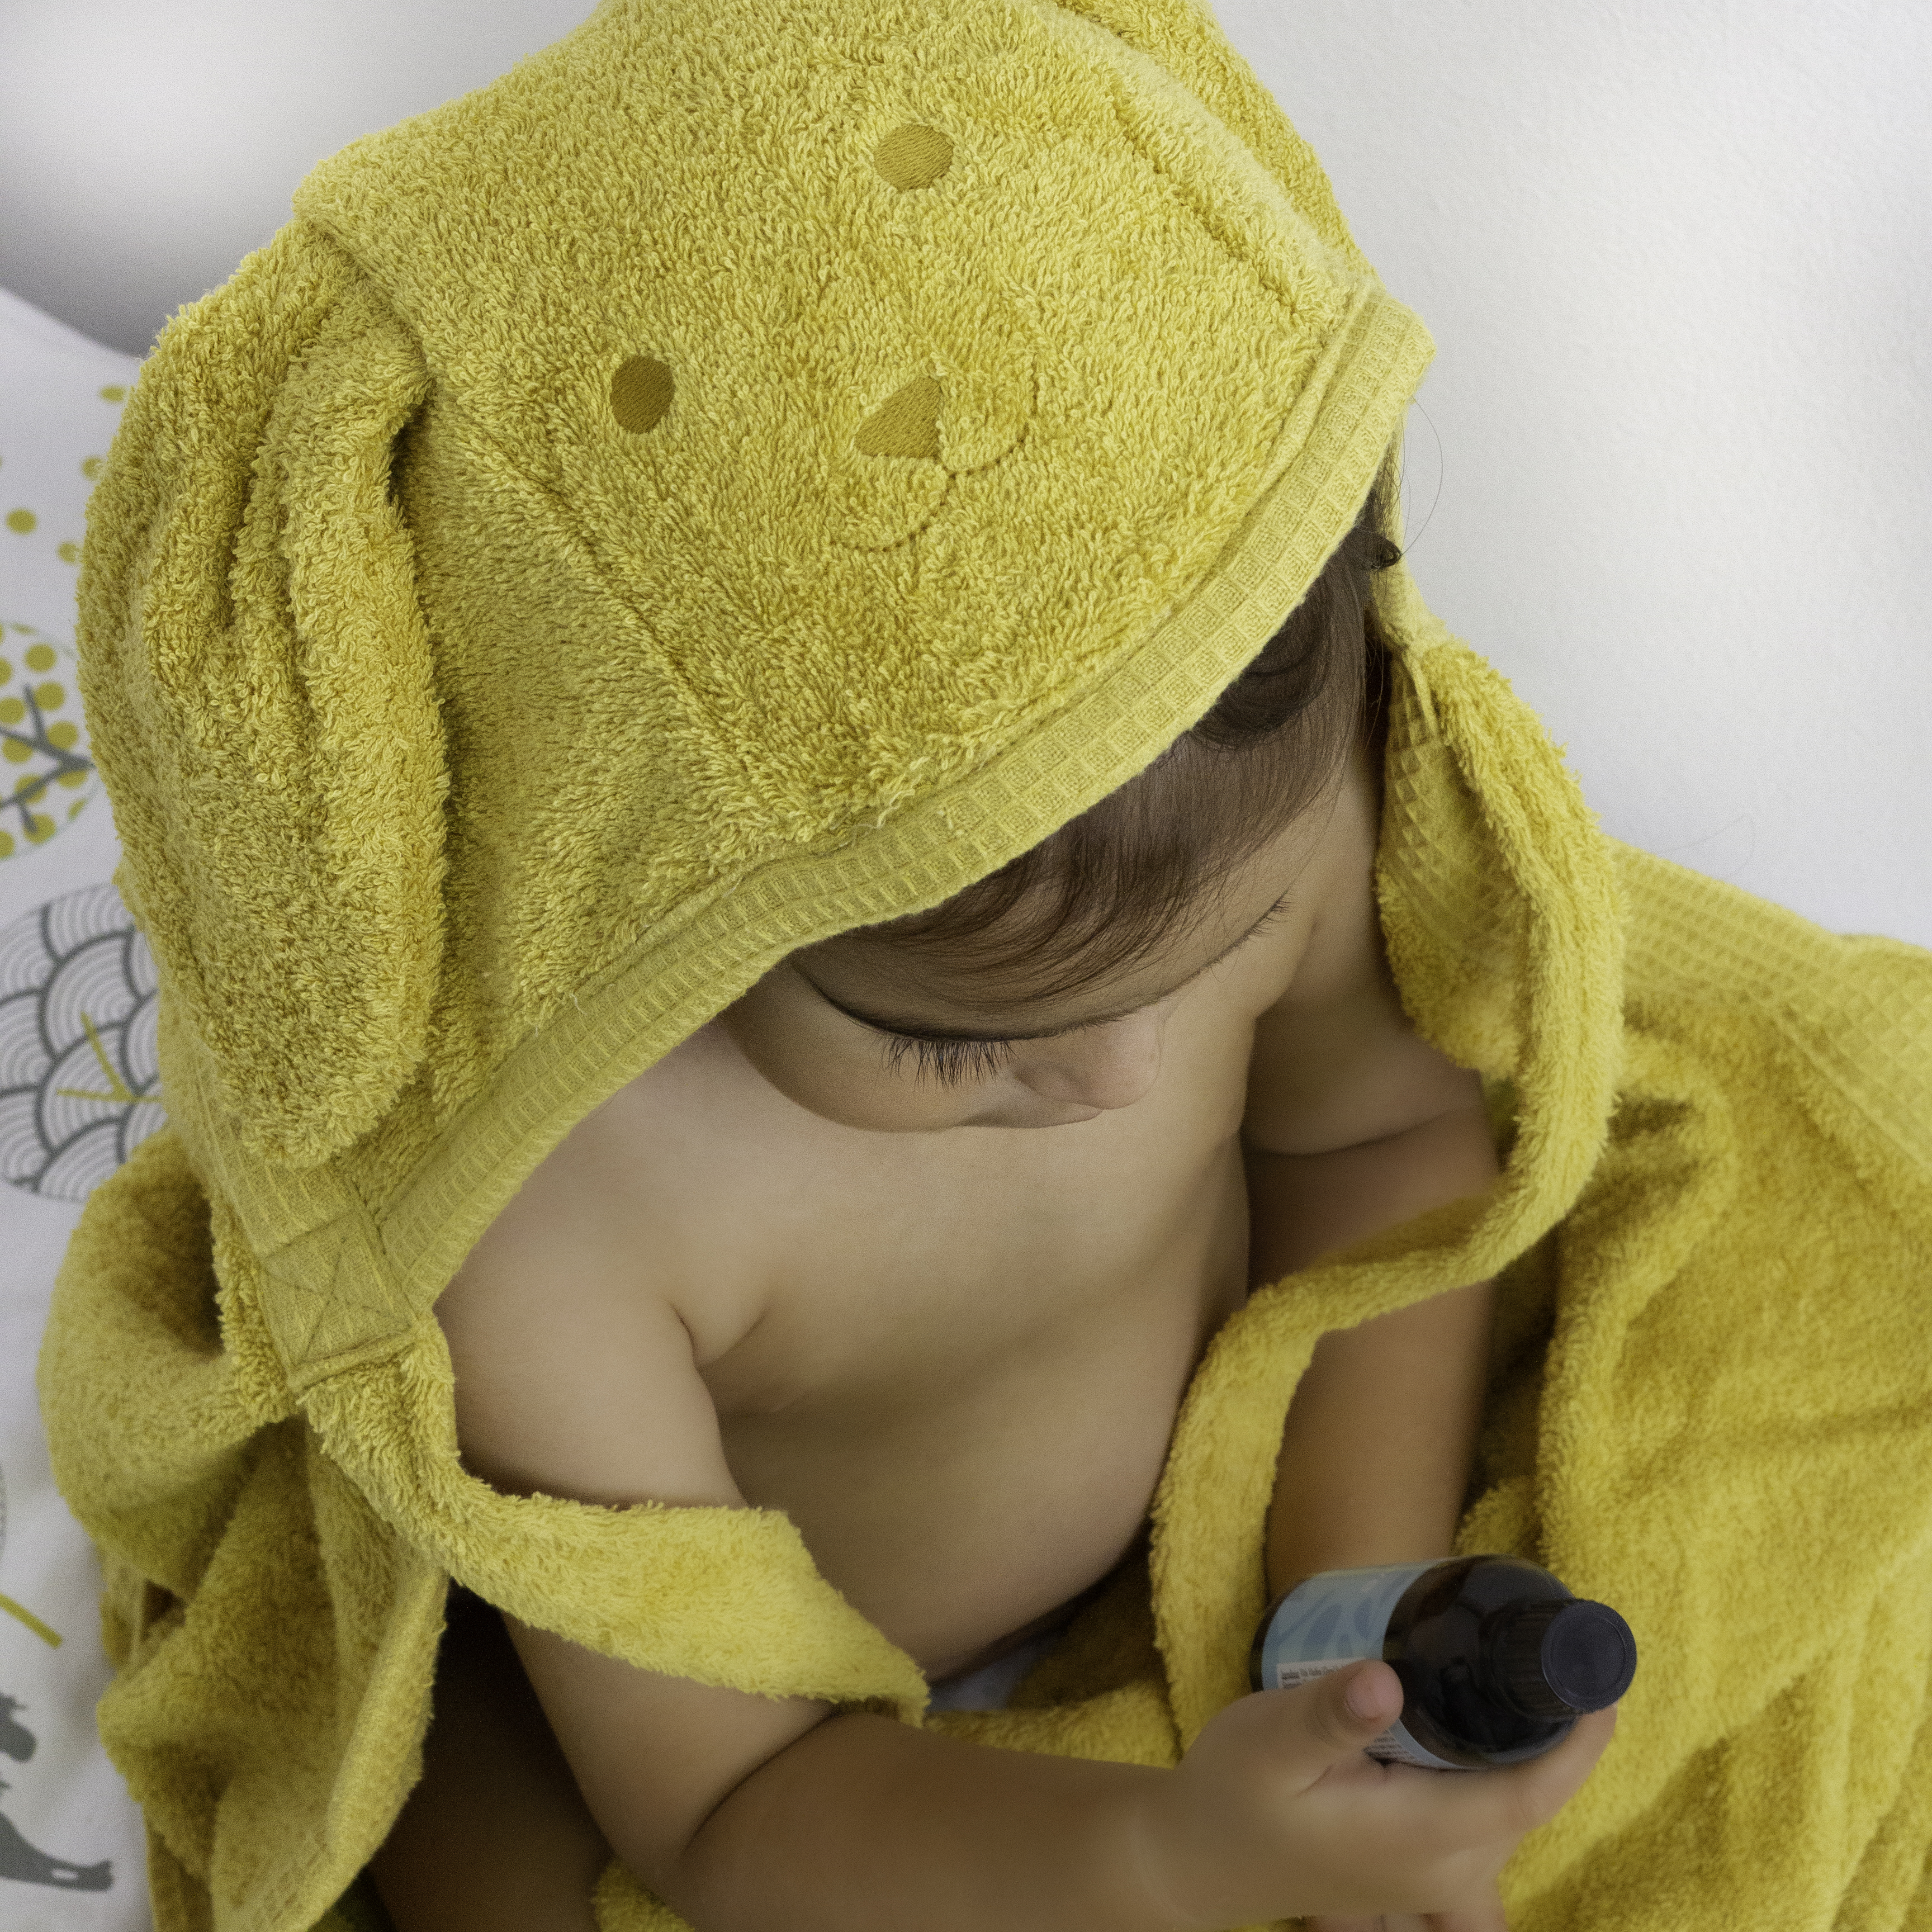 שמן עיסוי | שמן אמבט לתינוק | שמנים מרגיעים לתינוקות